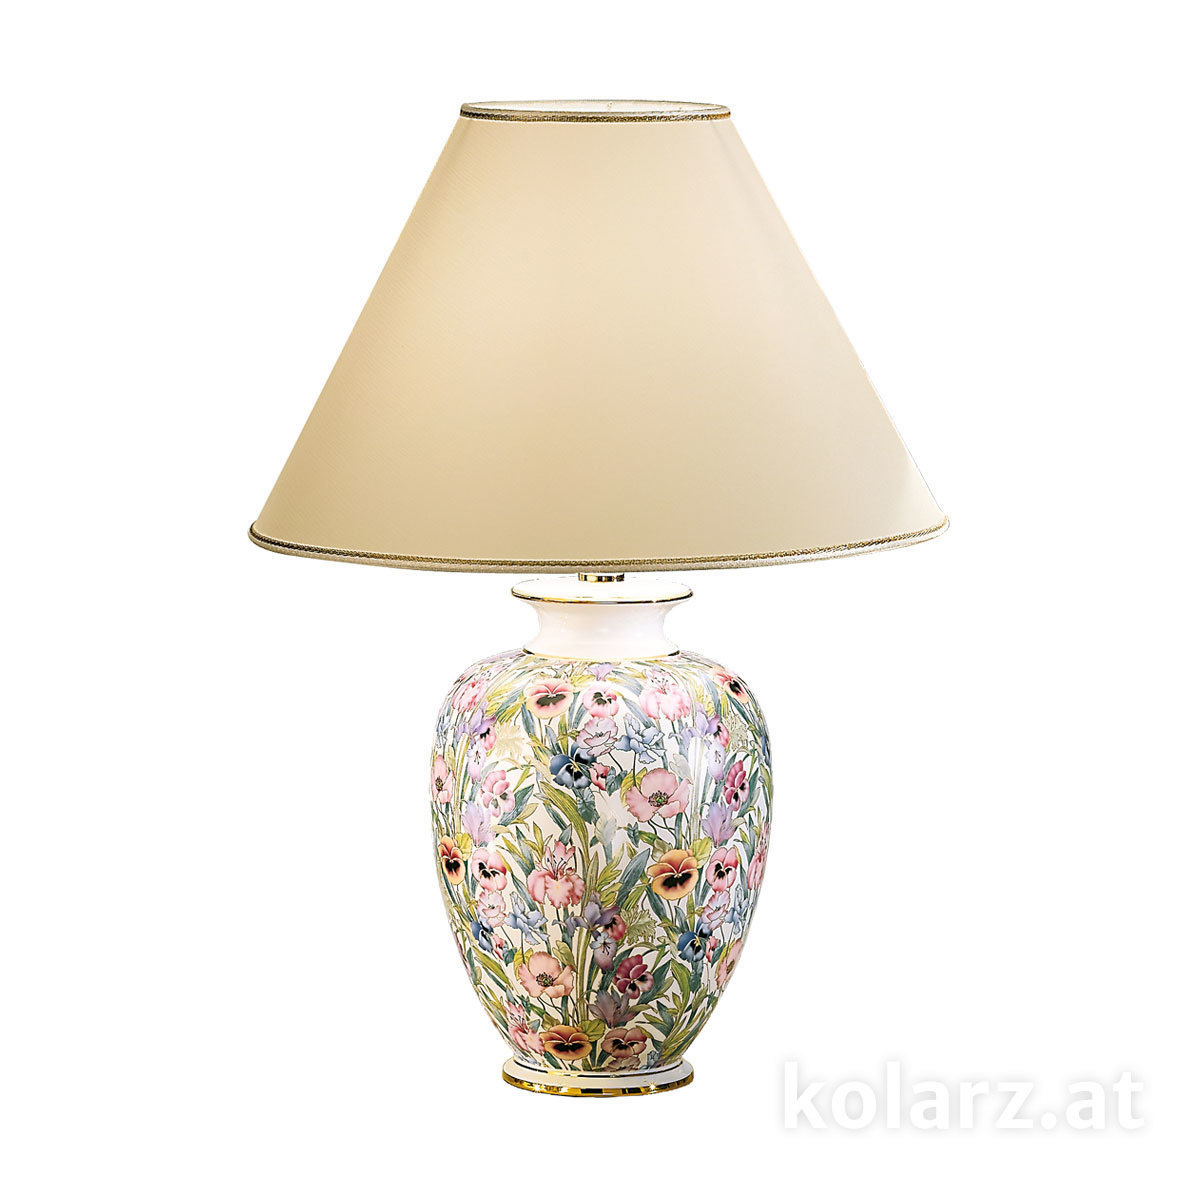 KOLARZ LeuchtenTischleuchte | table lamp Giardino -Panse